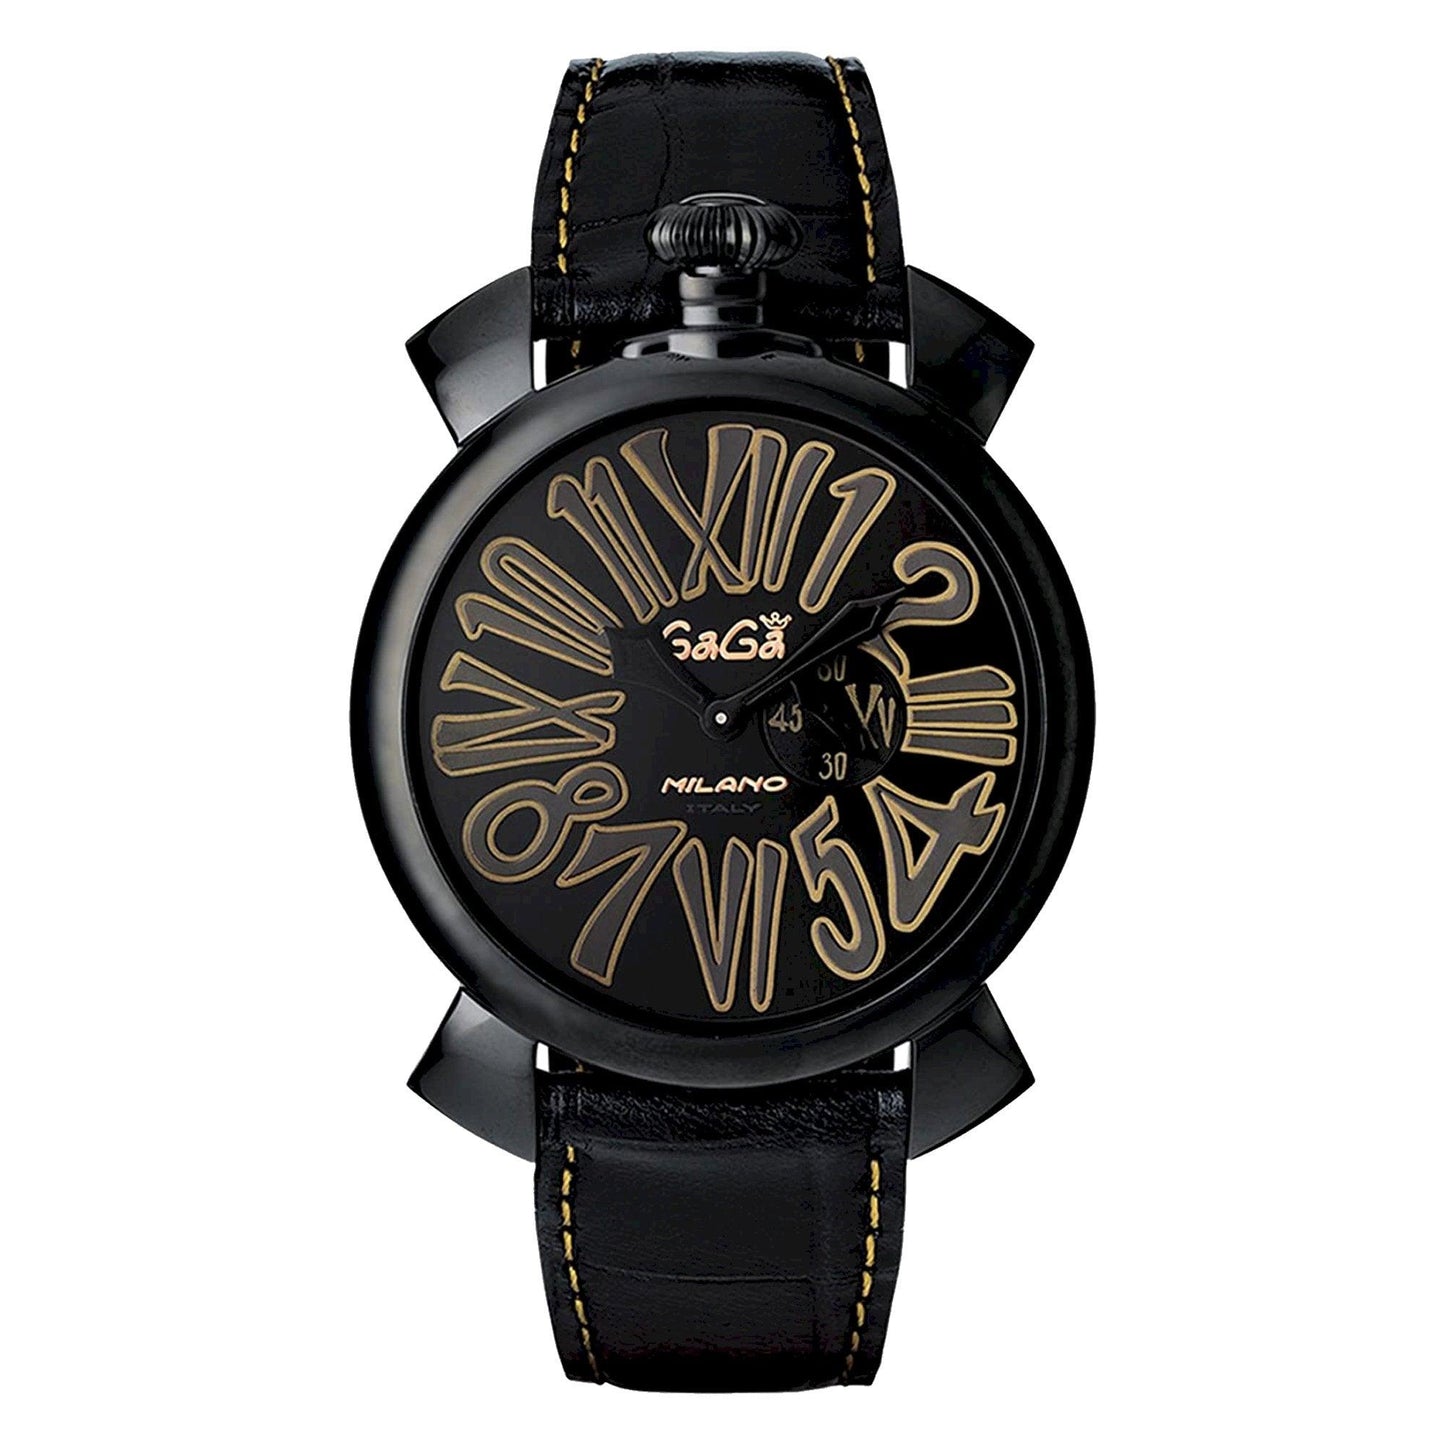 Gagà Milano 5086-01 orologio unisex al quarzo - Kechiq Concept Boutique